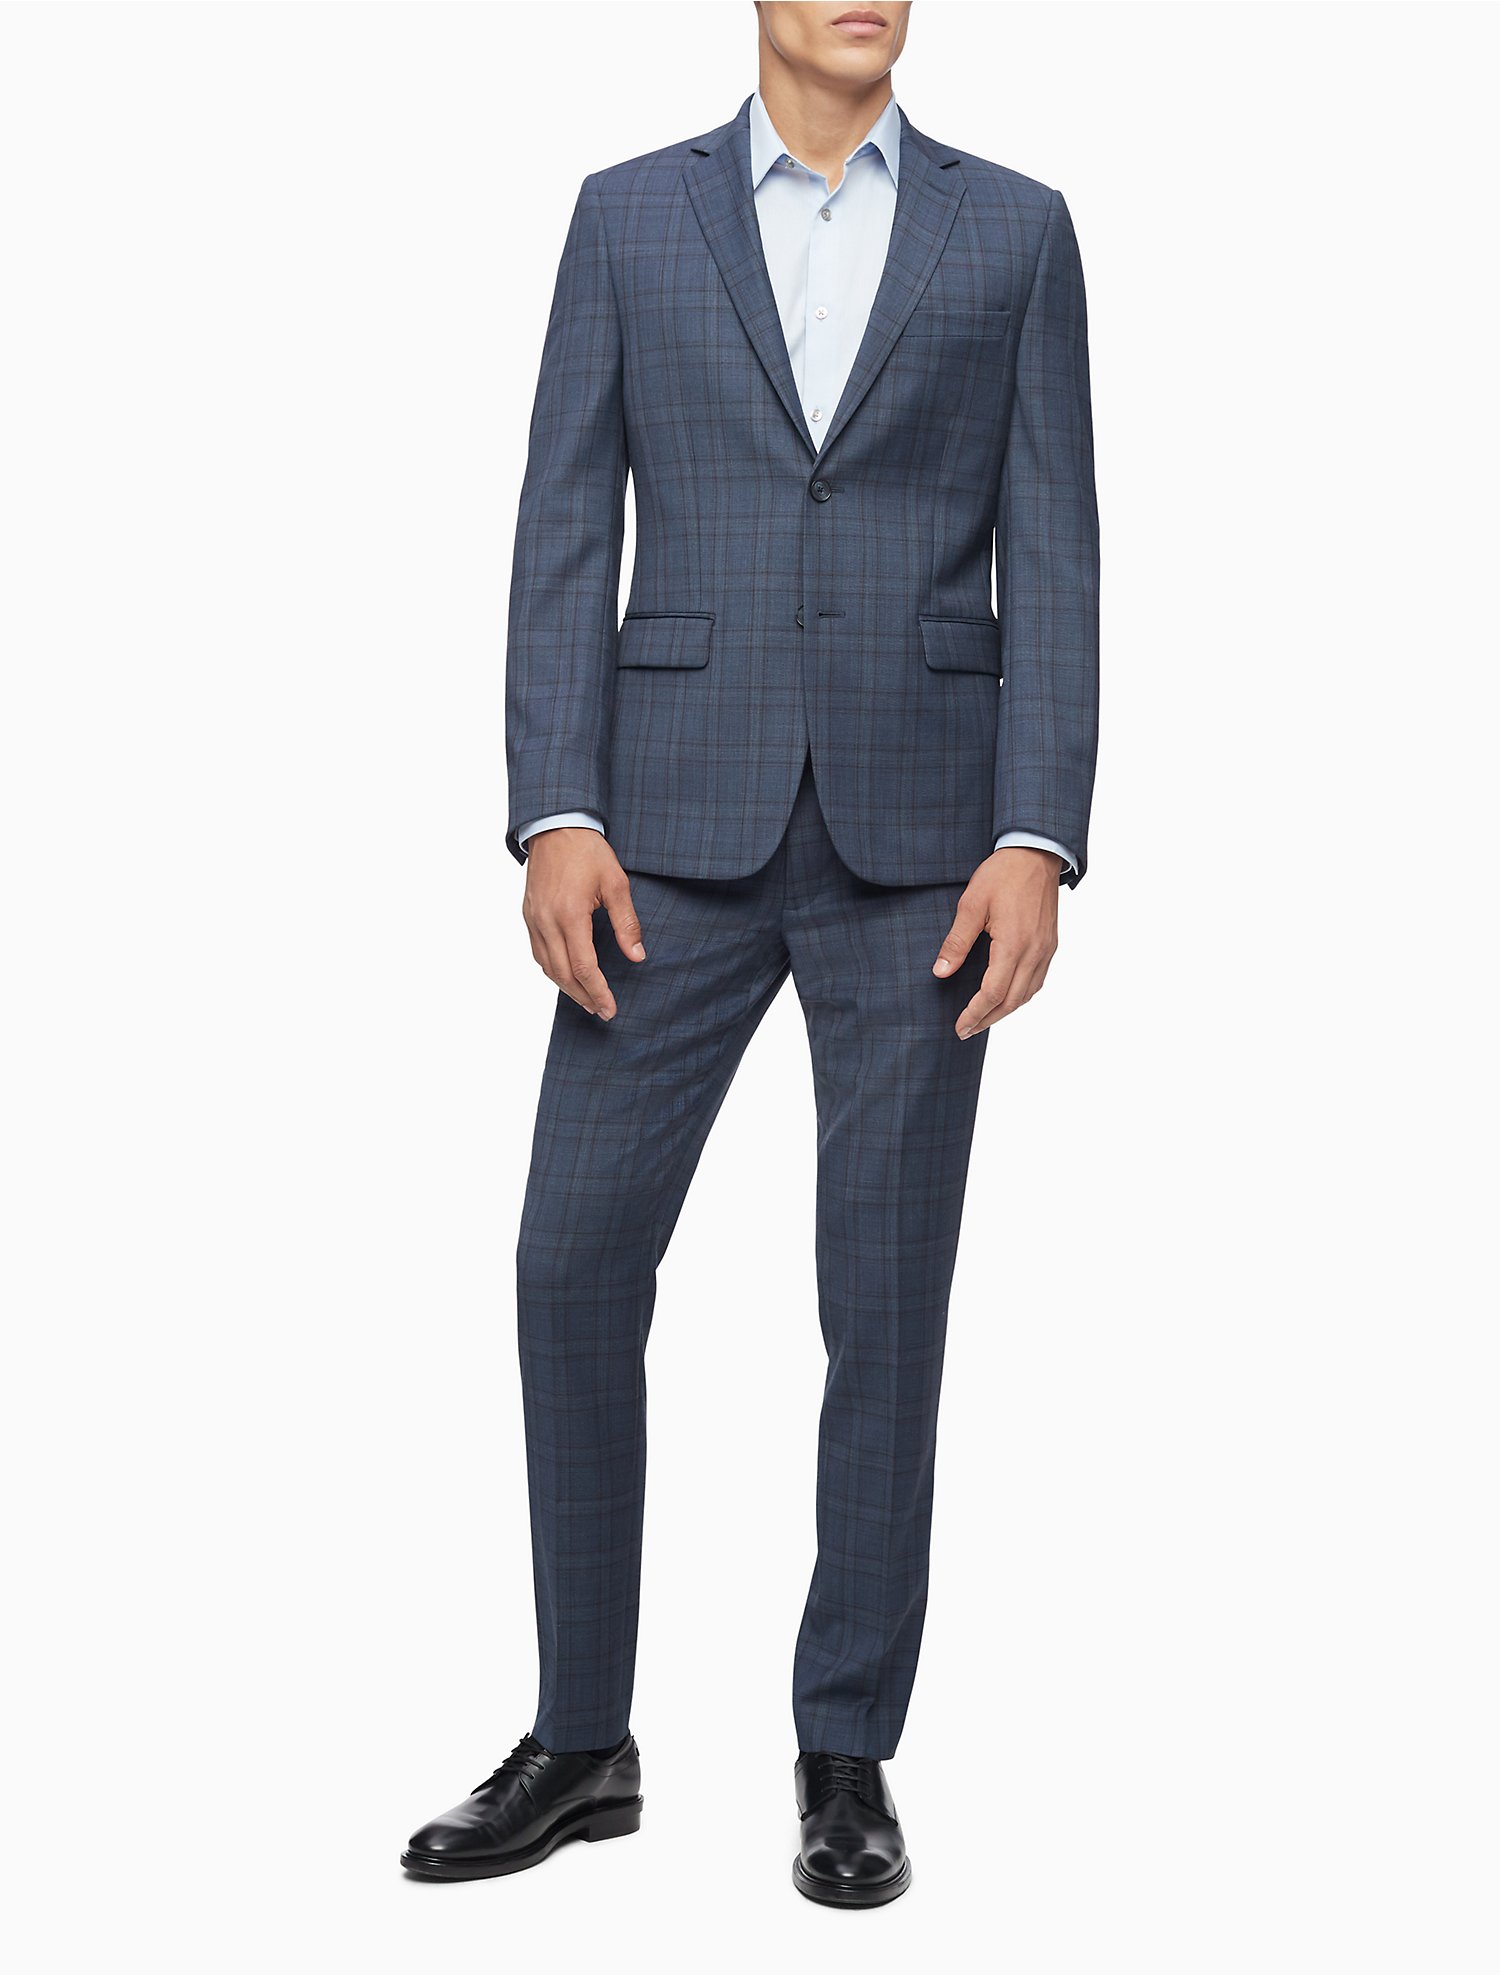 Descubrir 42+ imagen calvin klein blue plaid suit